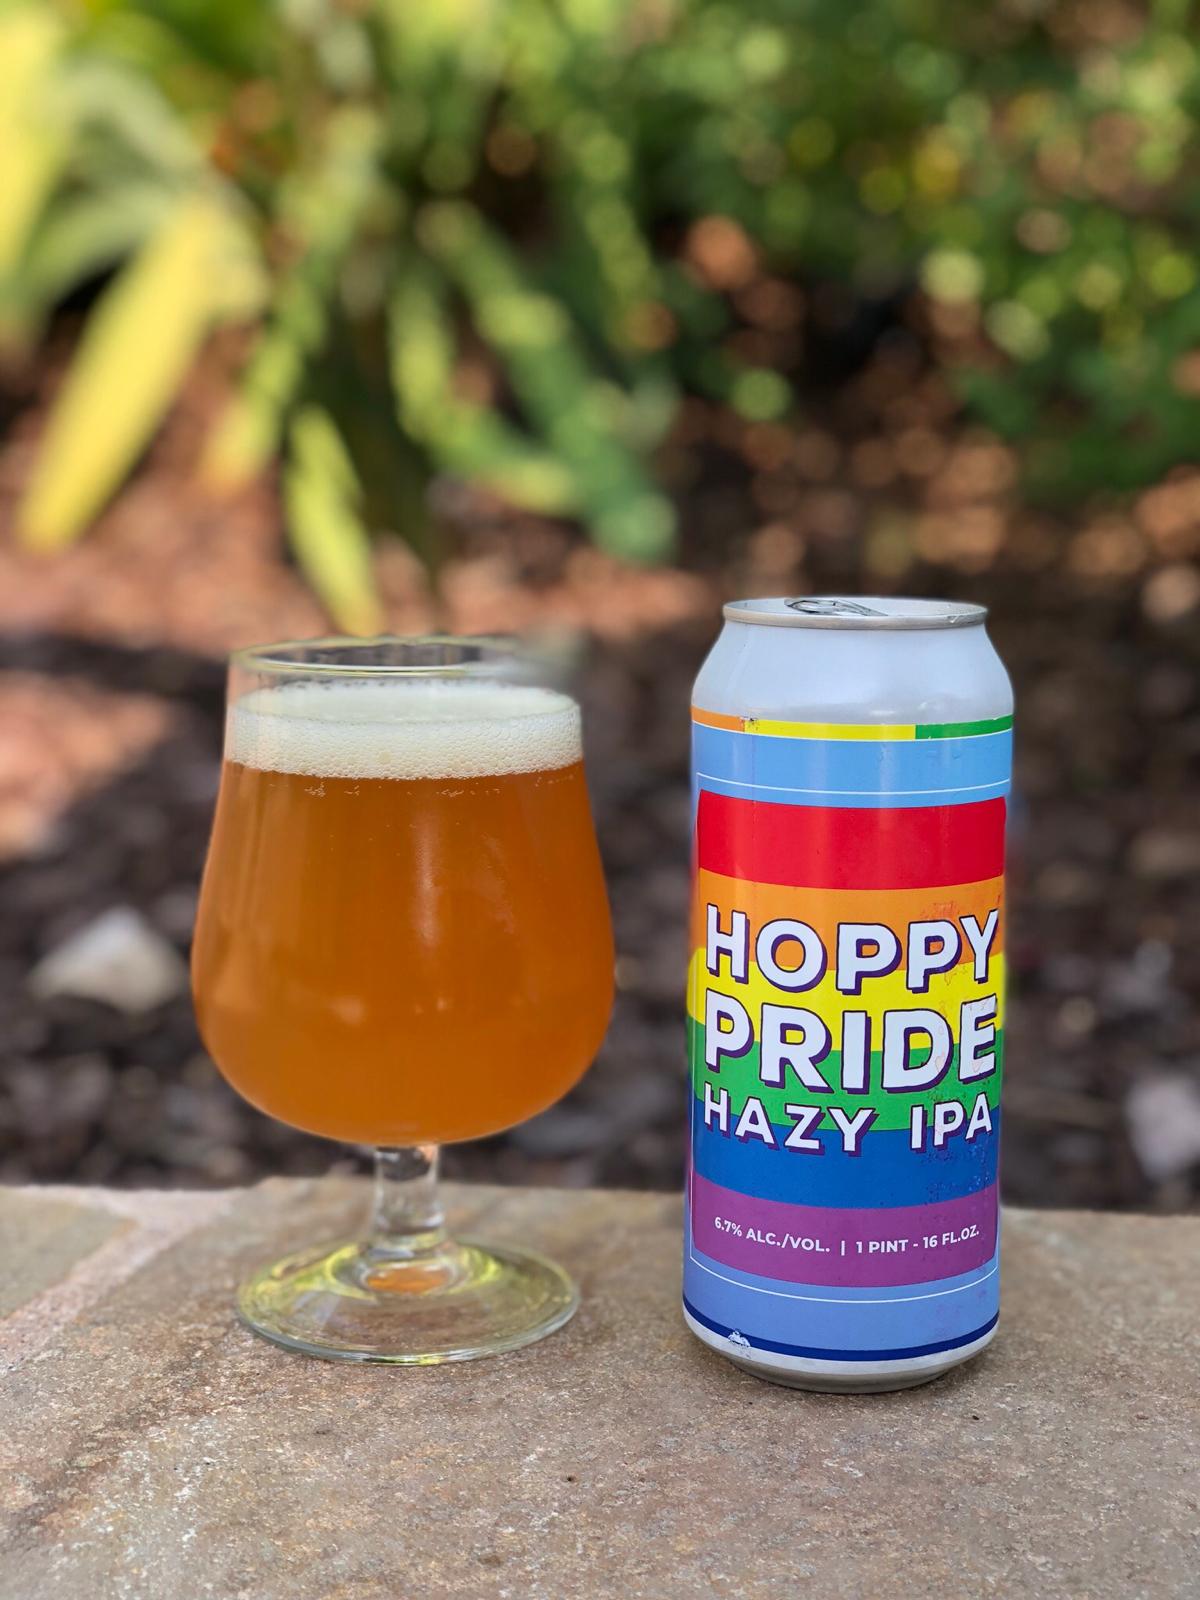 Hoppy Pride Hazy IPA